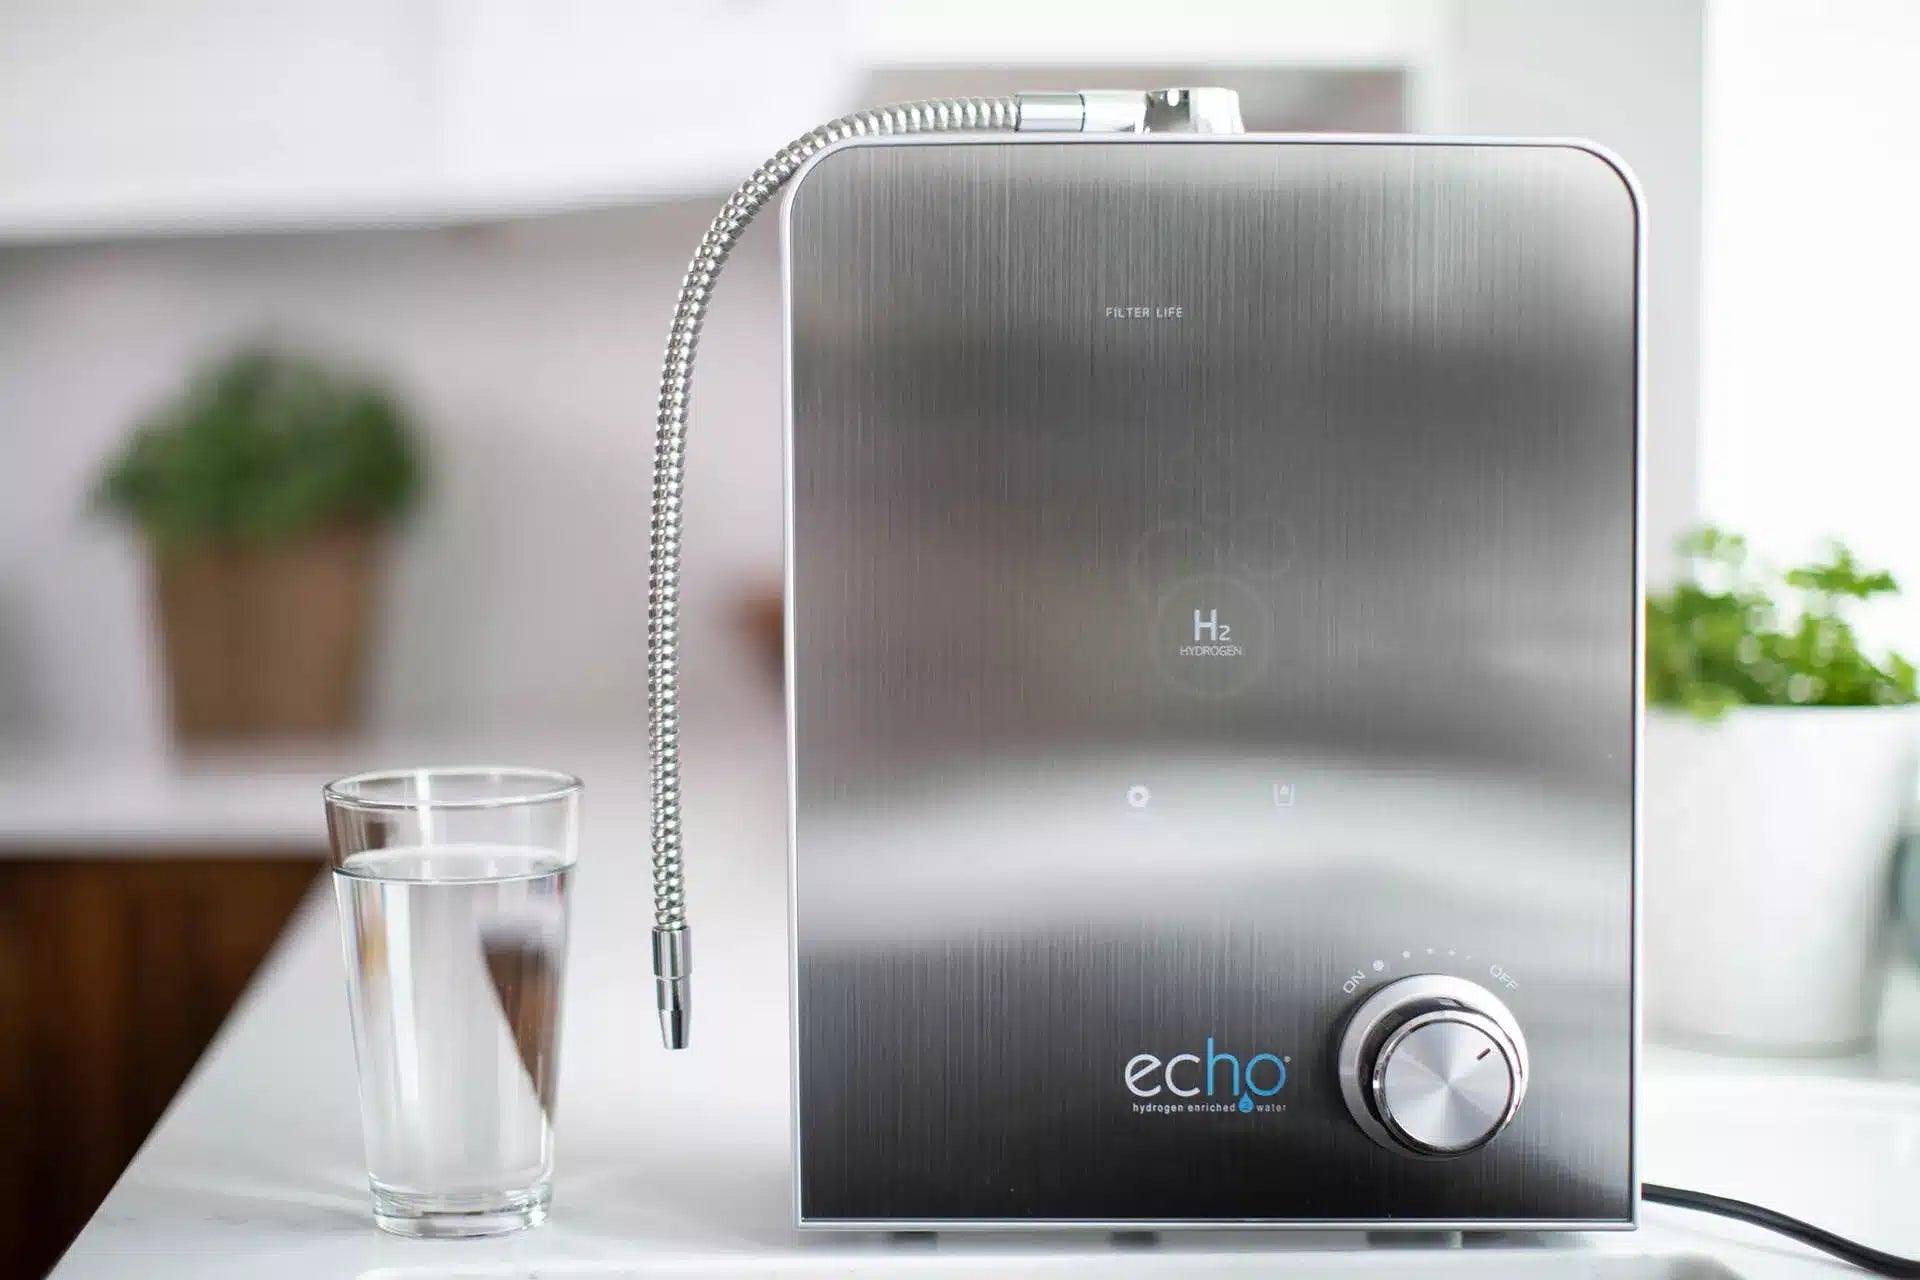 Echo H2® Hydrogen Water Machine - Echo Technologies